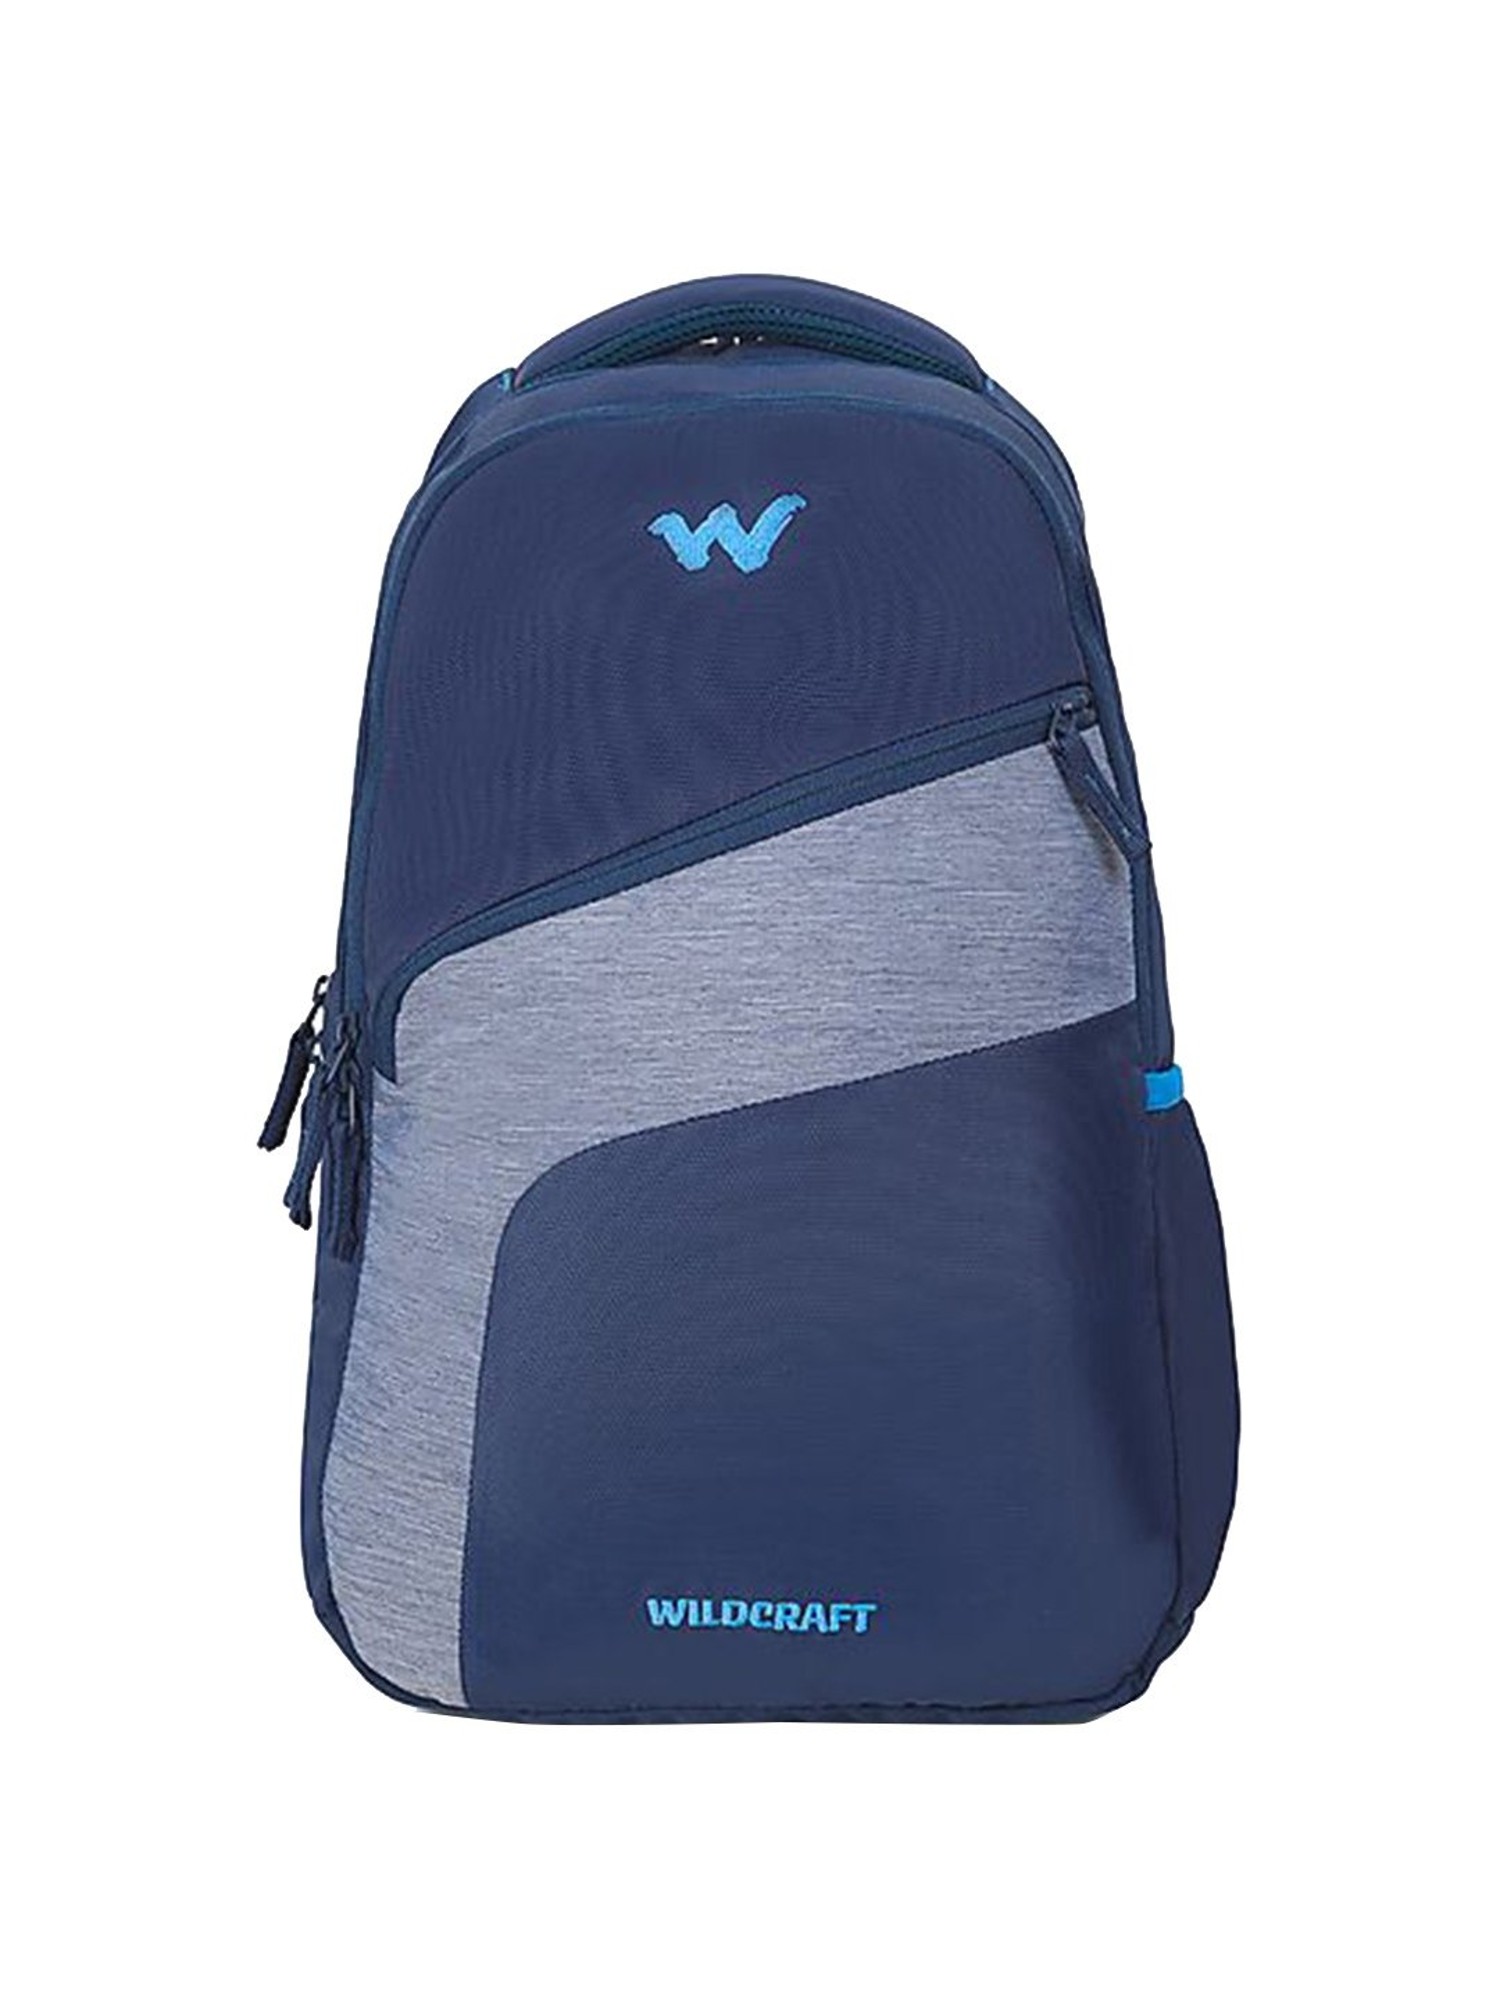 Wildcraft Backpack LBMP8